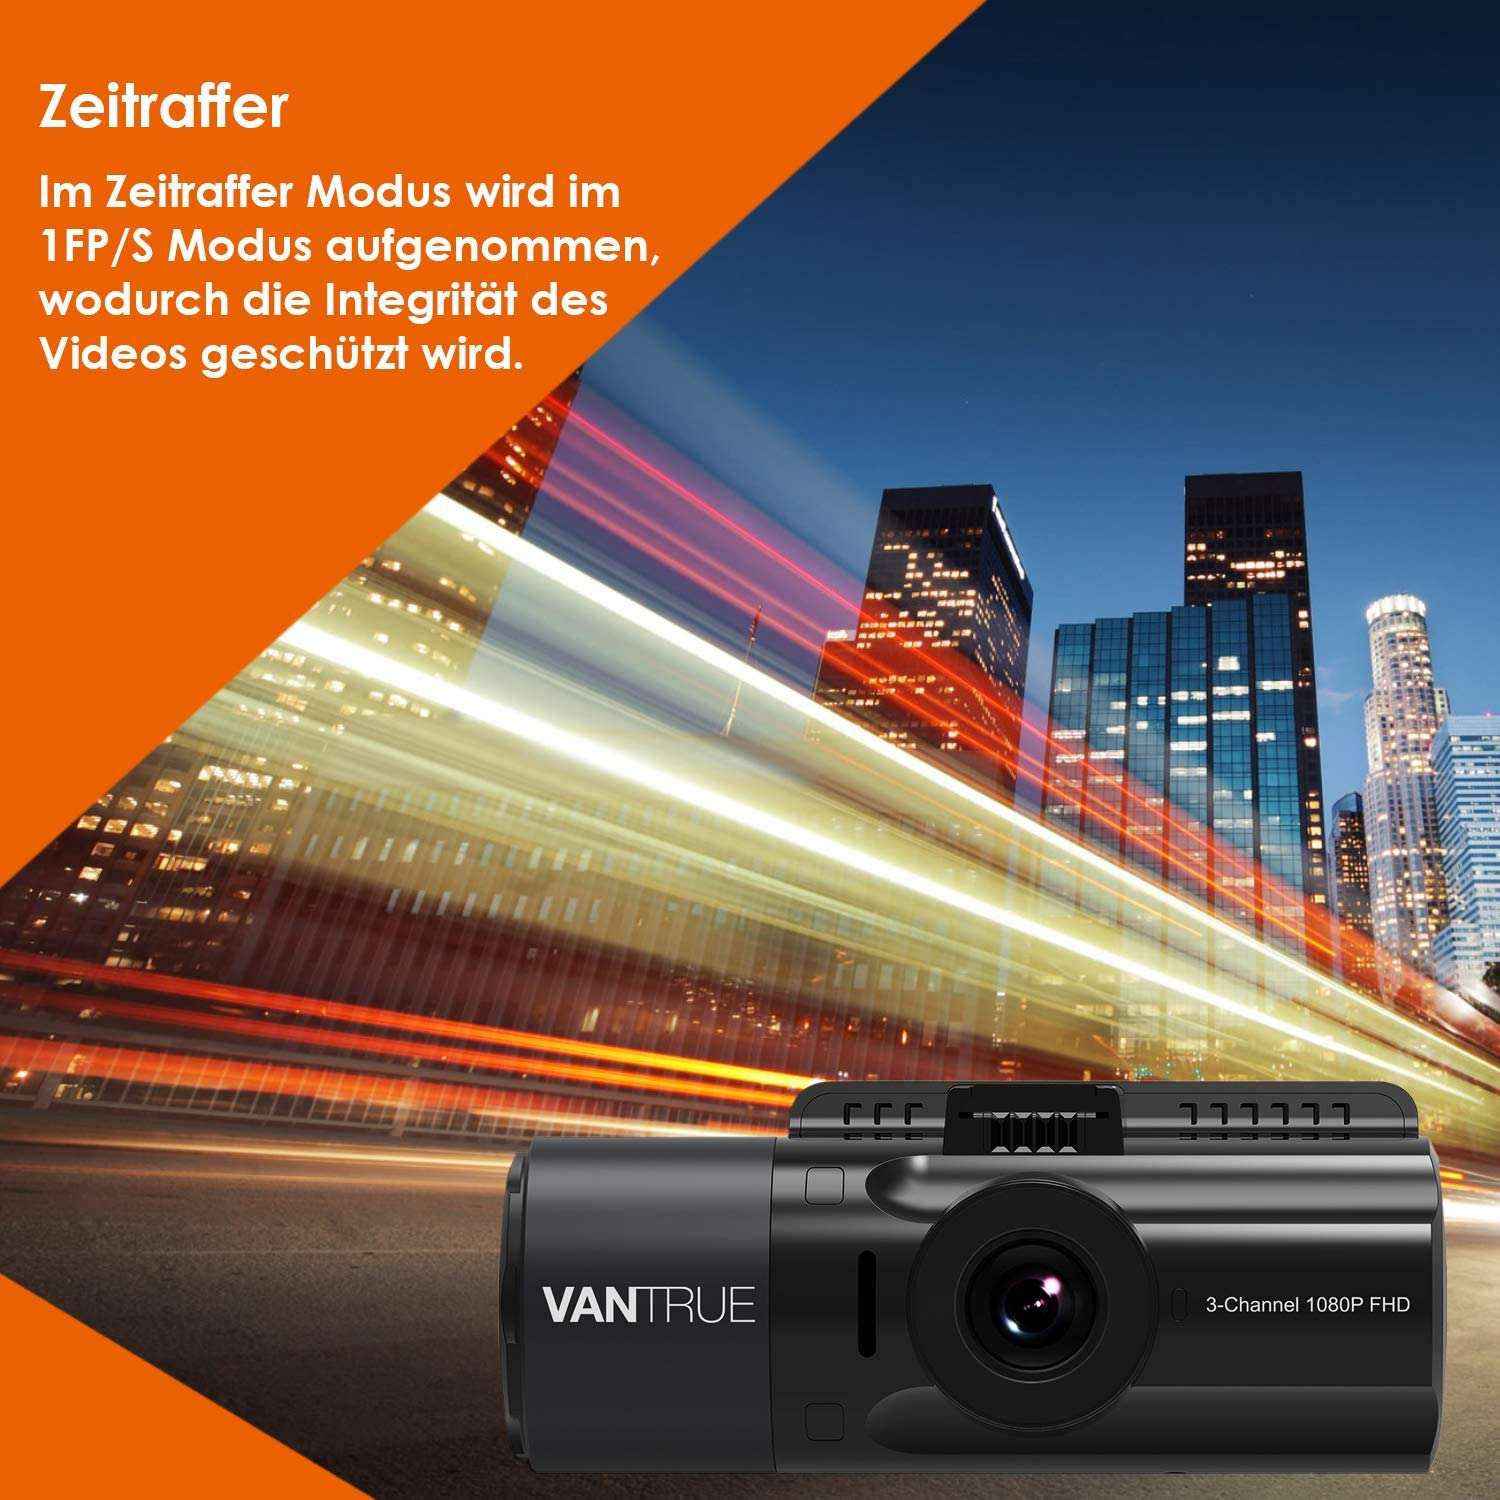 3-kanałowa kamera samochodowa Vantrue N4 1440p | mój GPS i zestaw i SD - pakiet